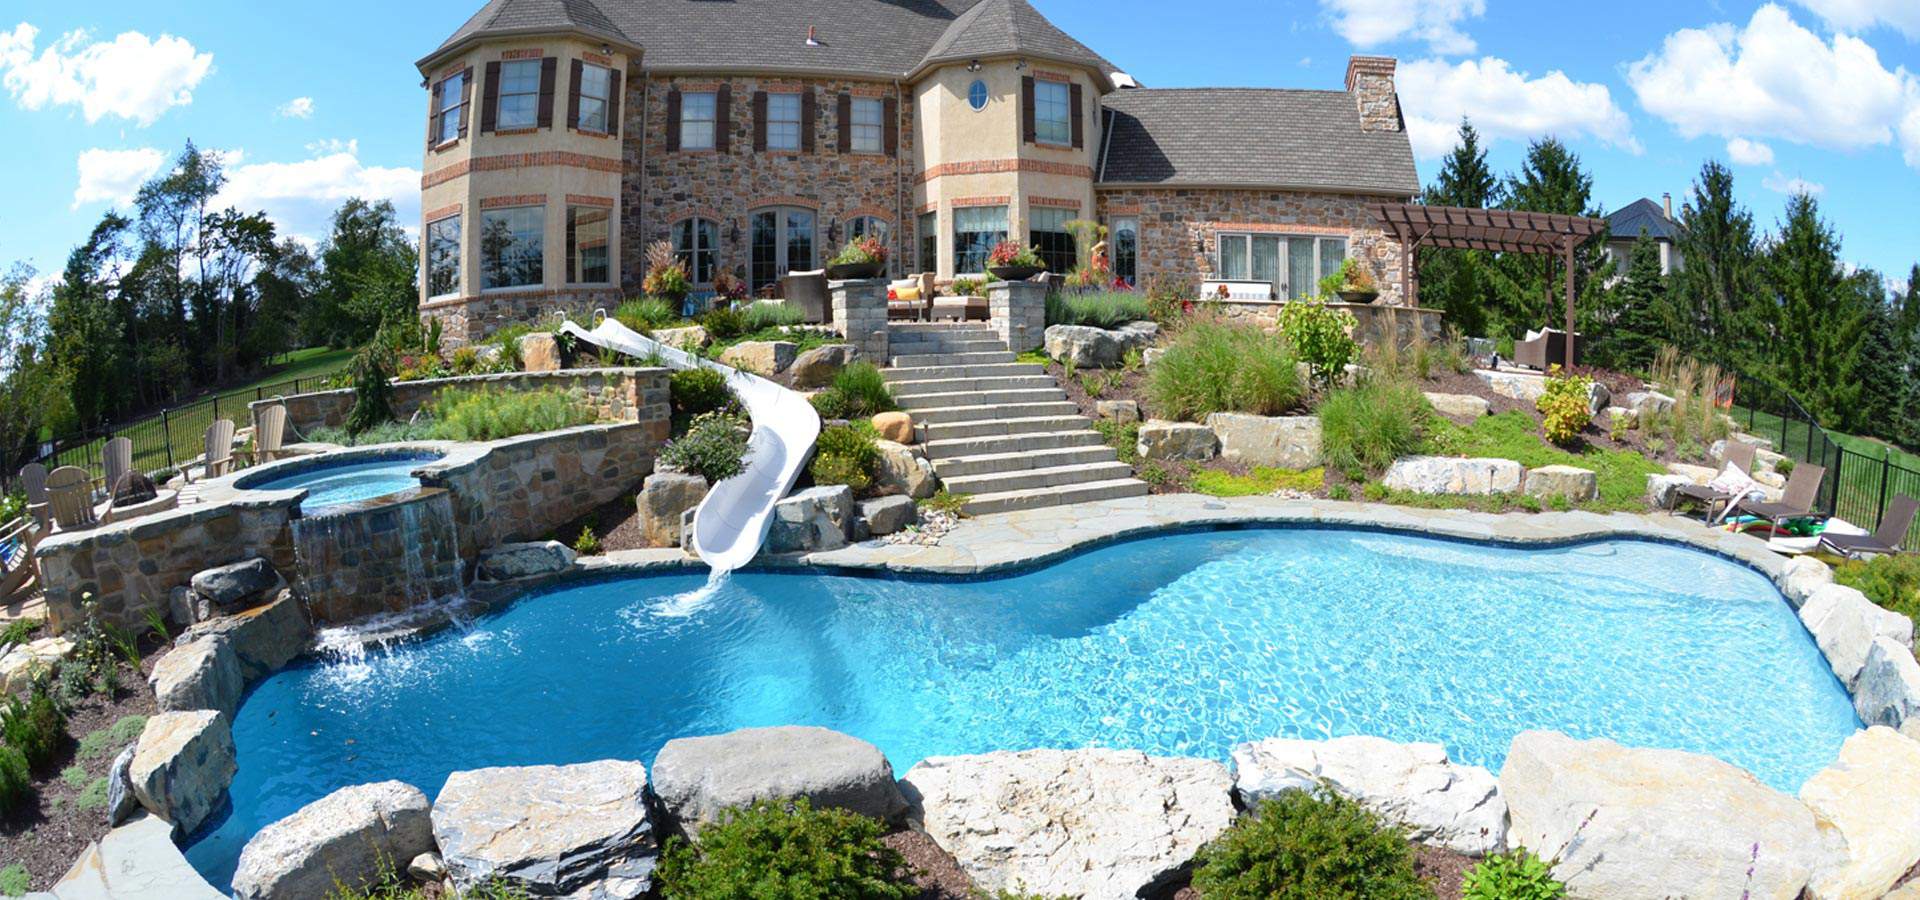 #1 Pool Builder in Lehigh Valley PA | Best Inground Pools